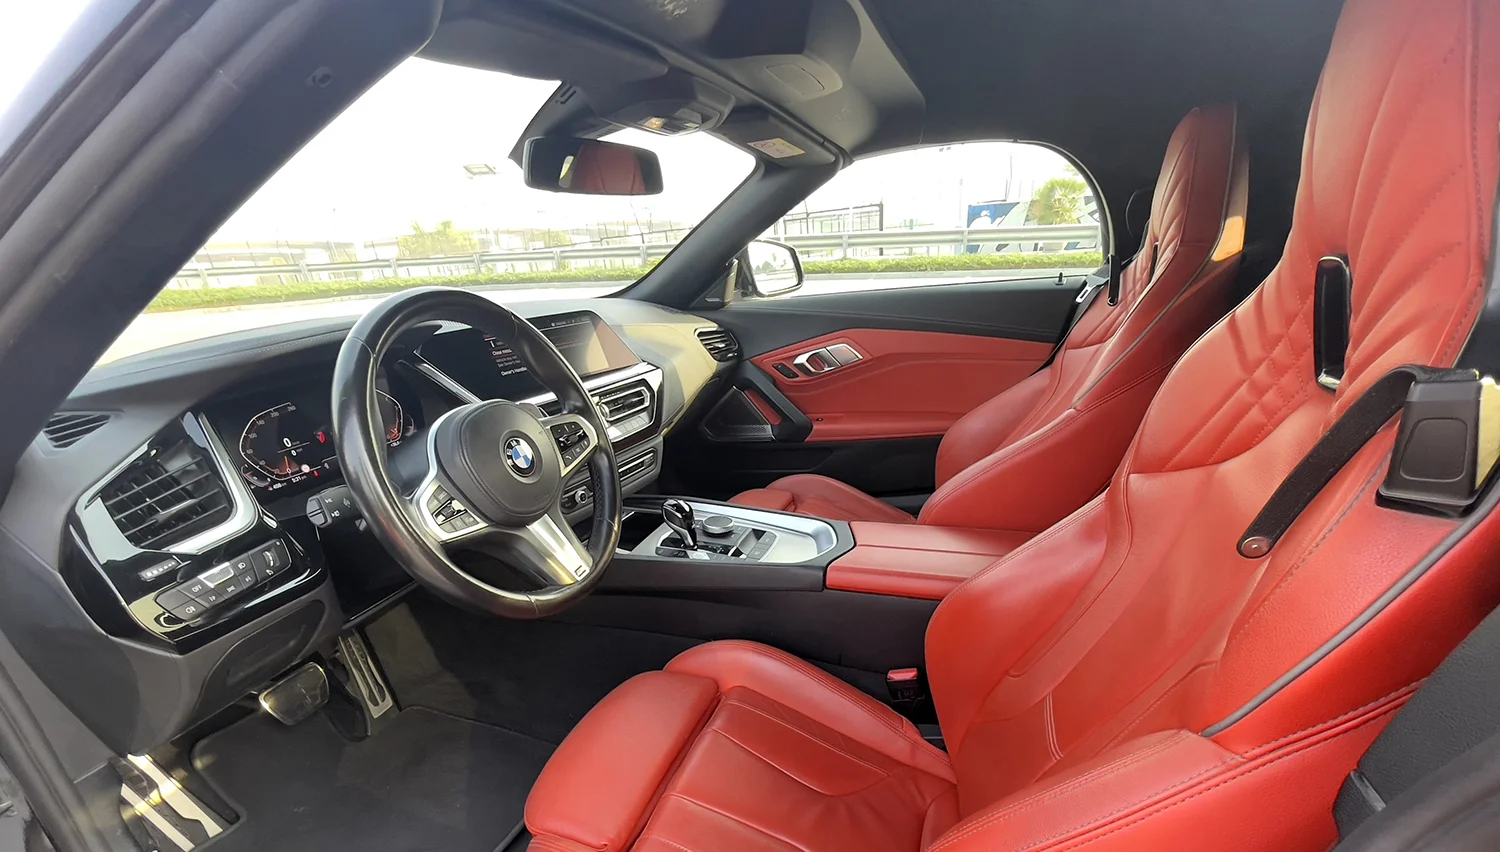 BMW Z4 price in Dubai